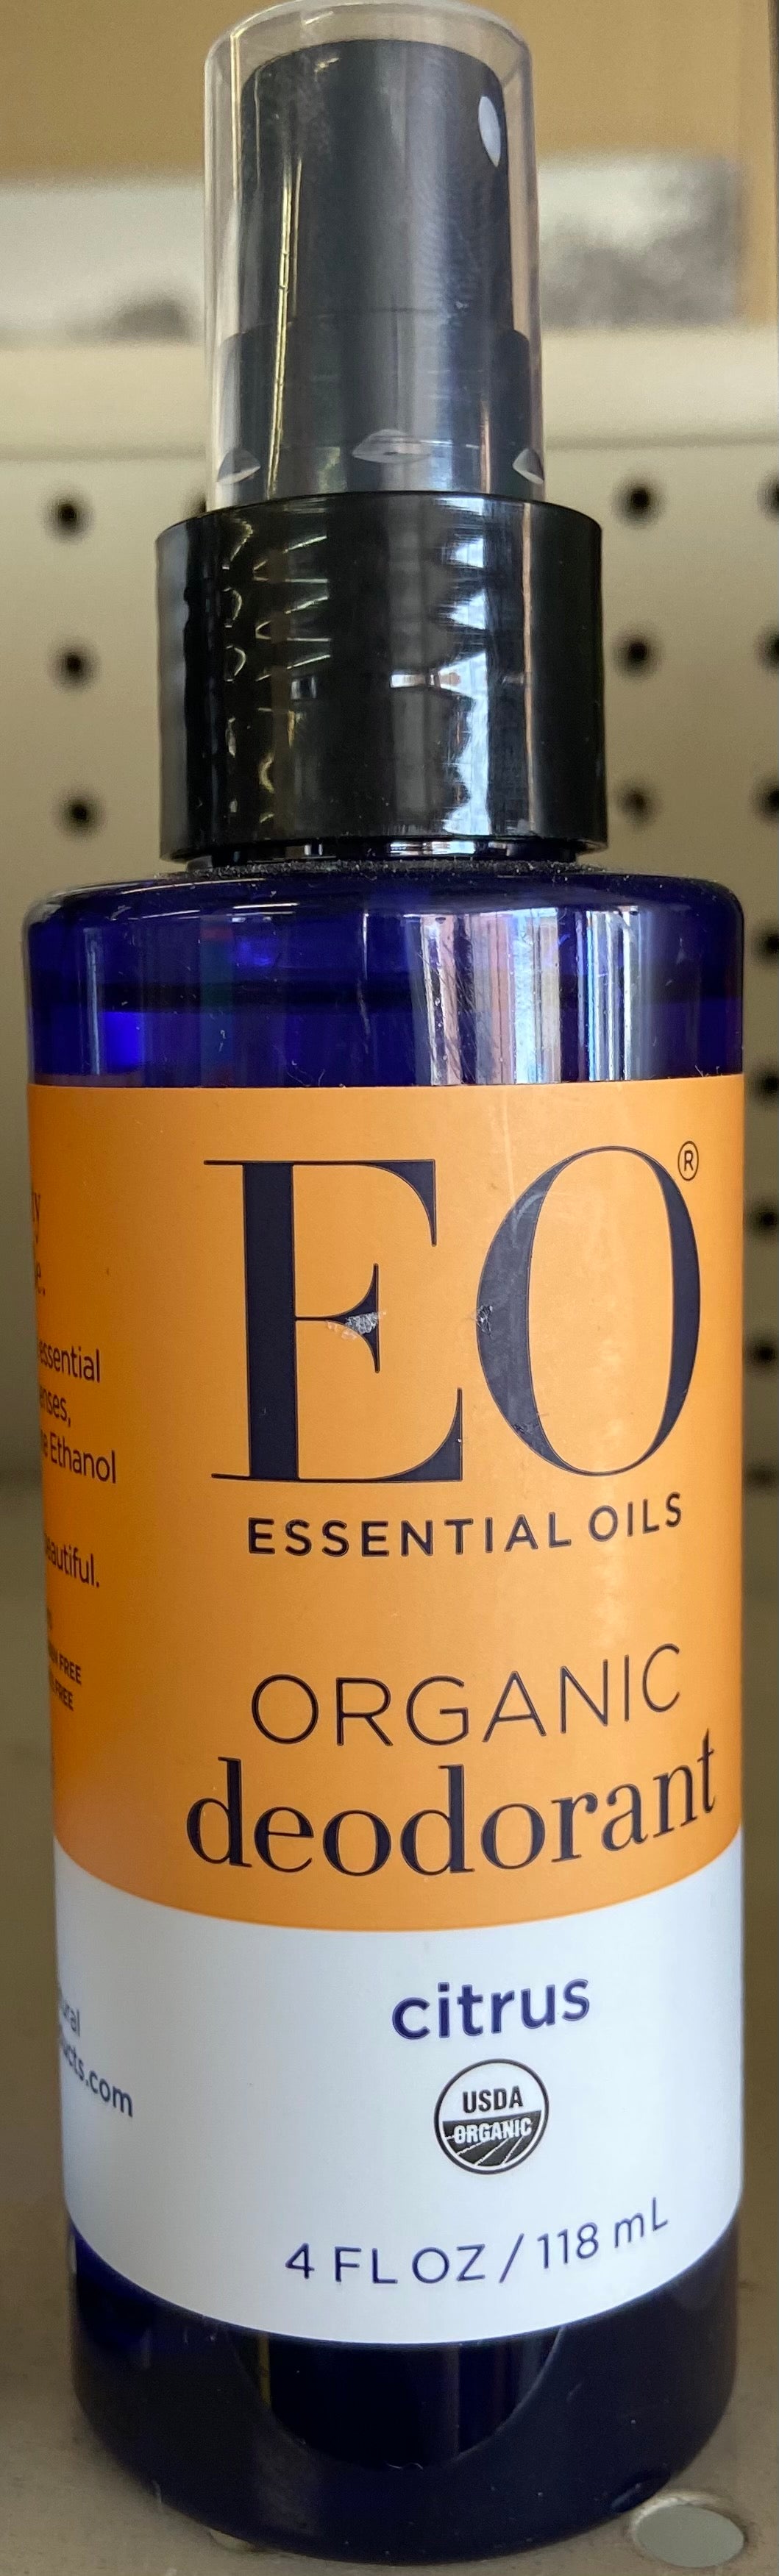 Deodorant, Citrus, EO Essential Oils, 4 oz, Organic